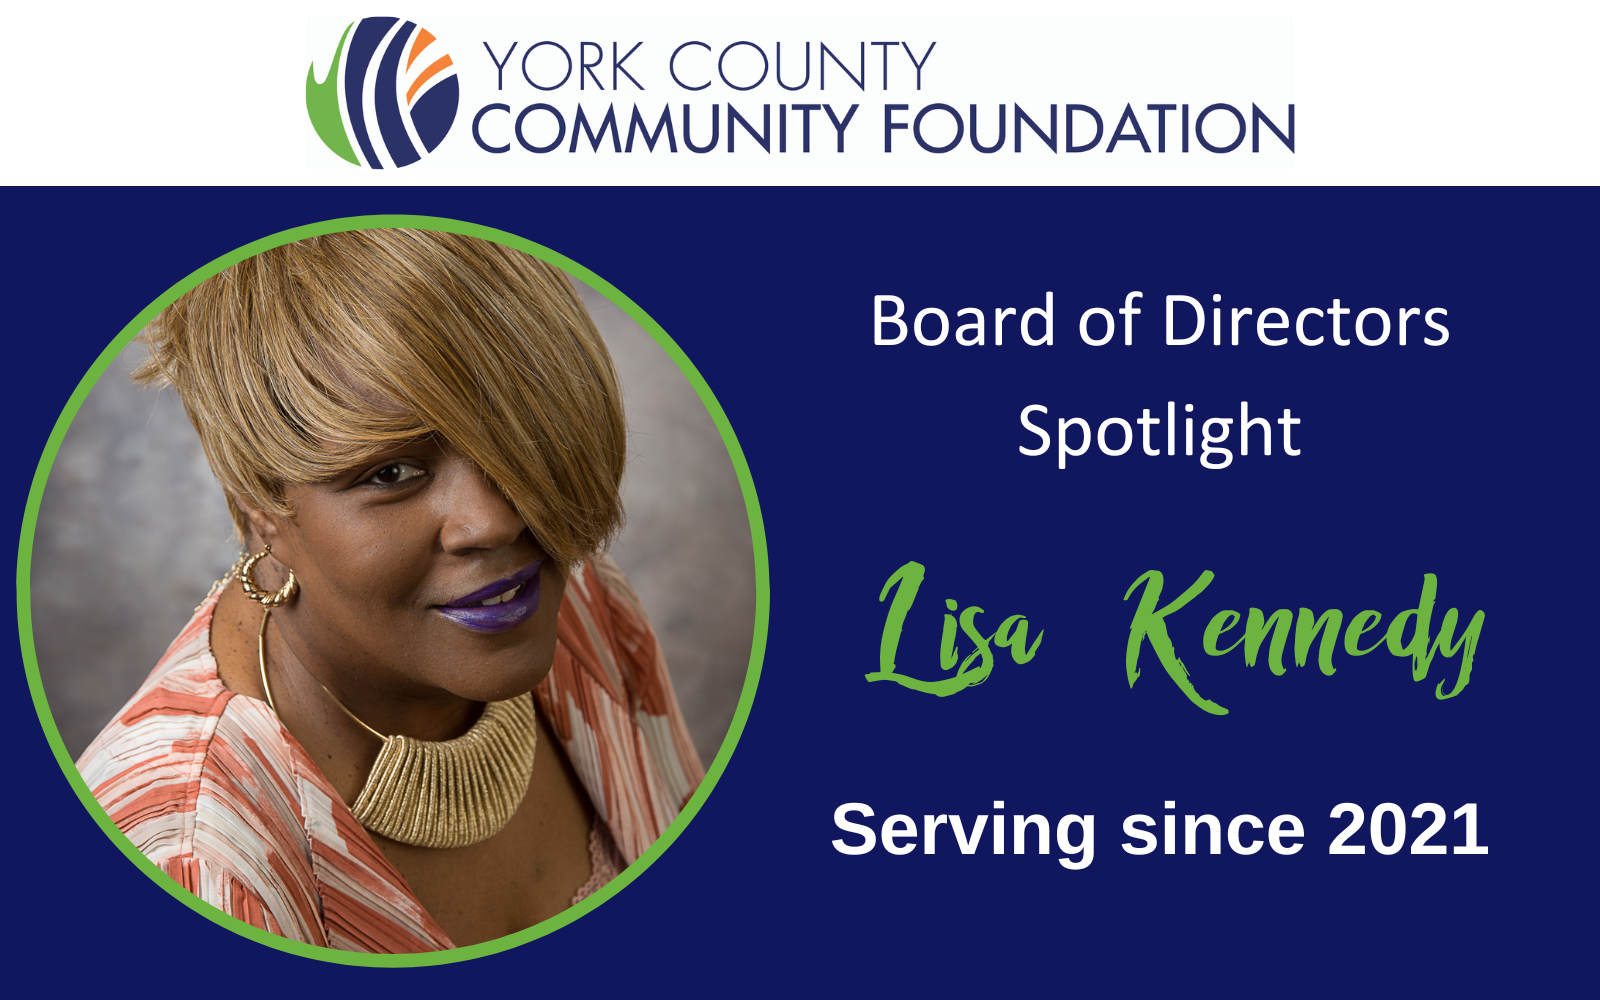 Board of Directors Spotlight: Lisa Kennedy